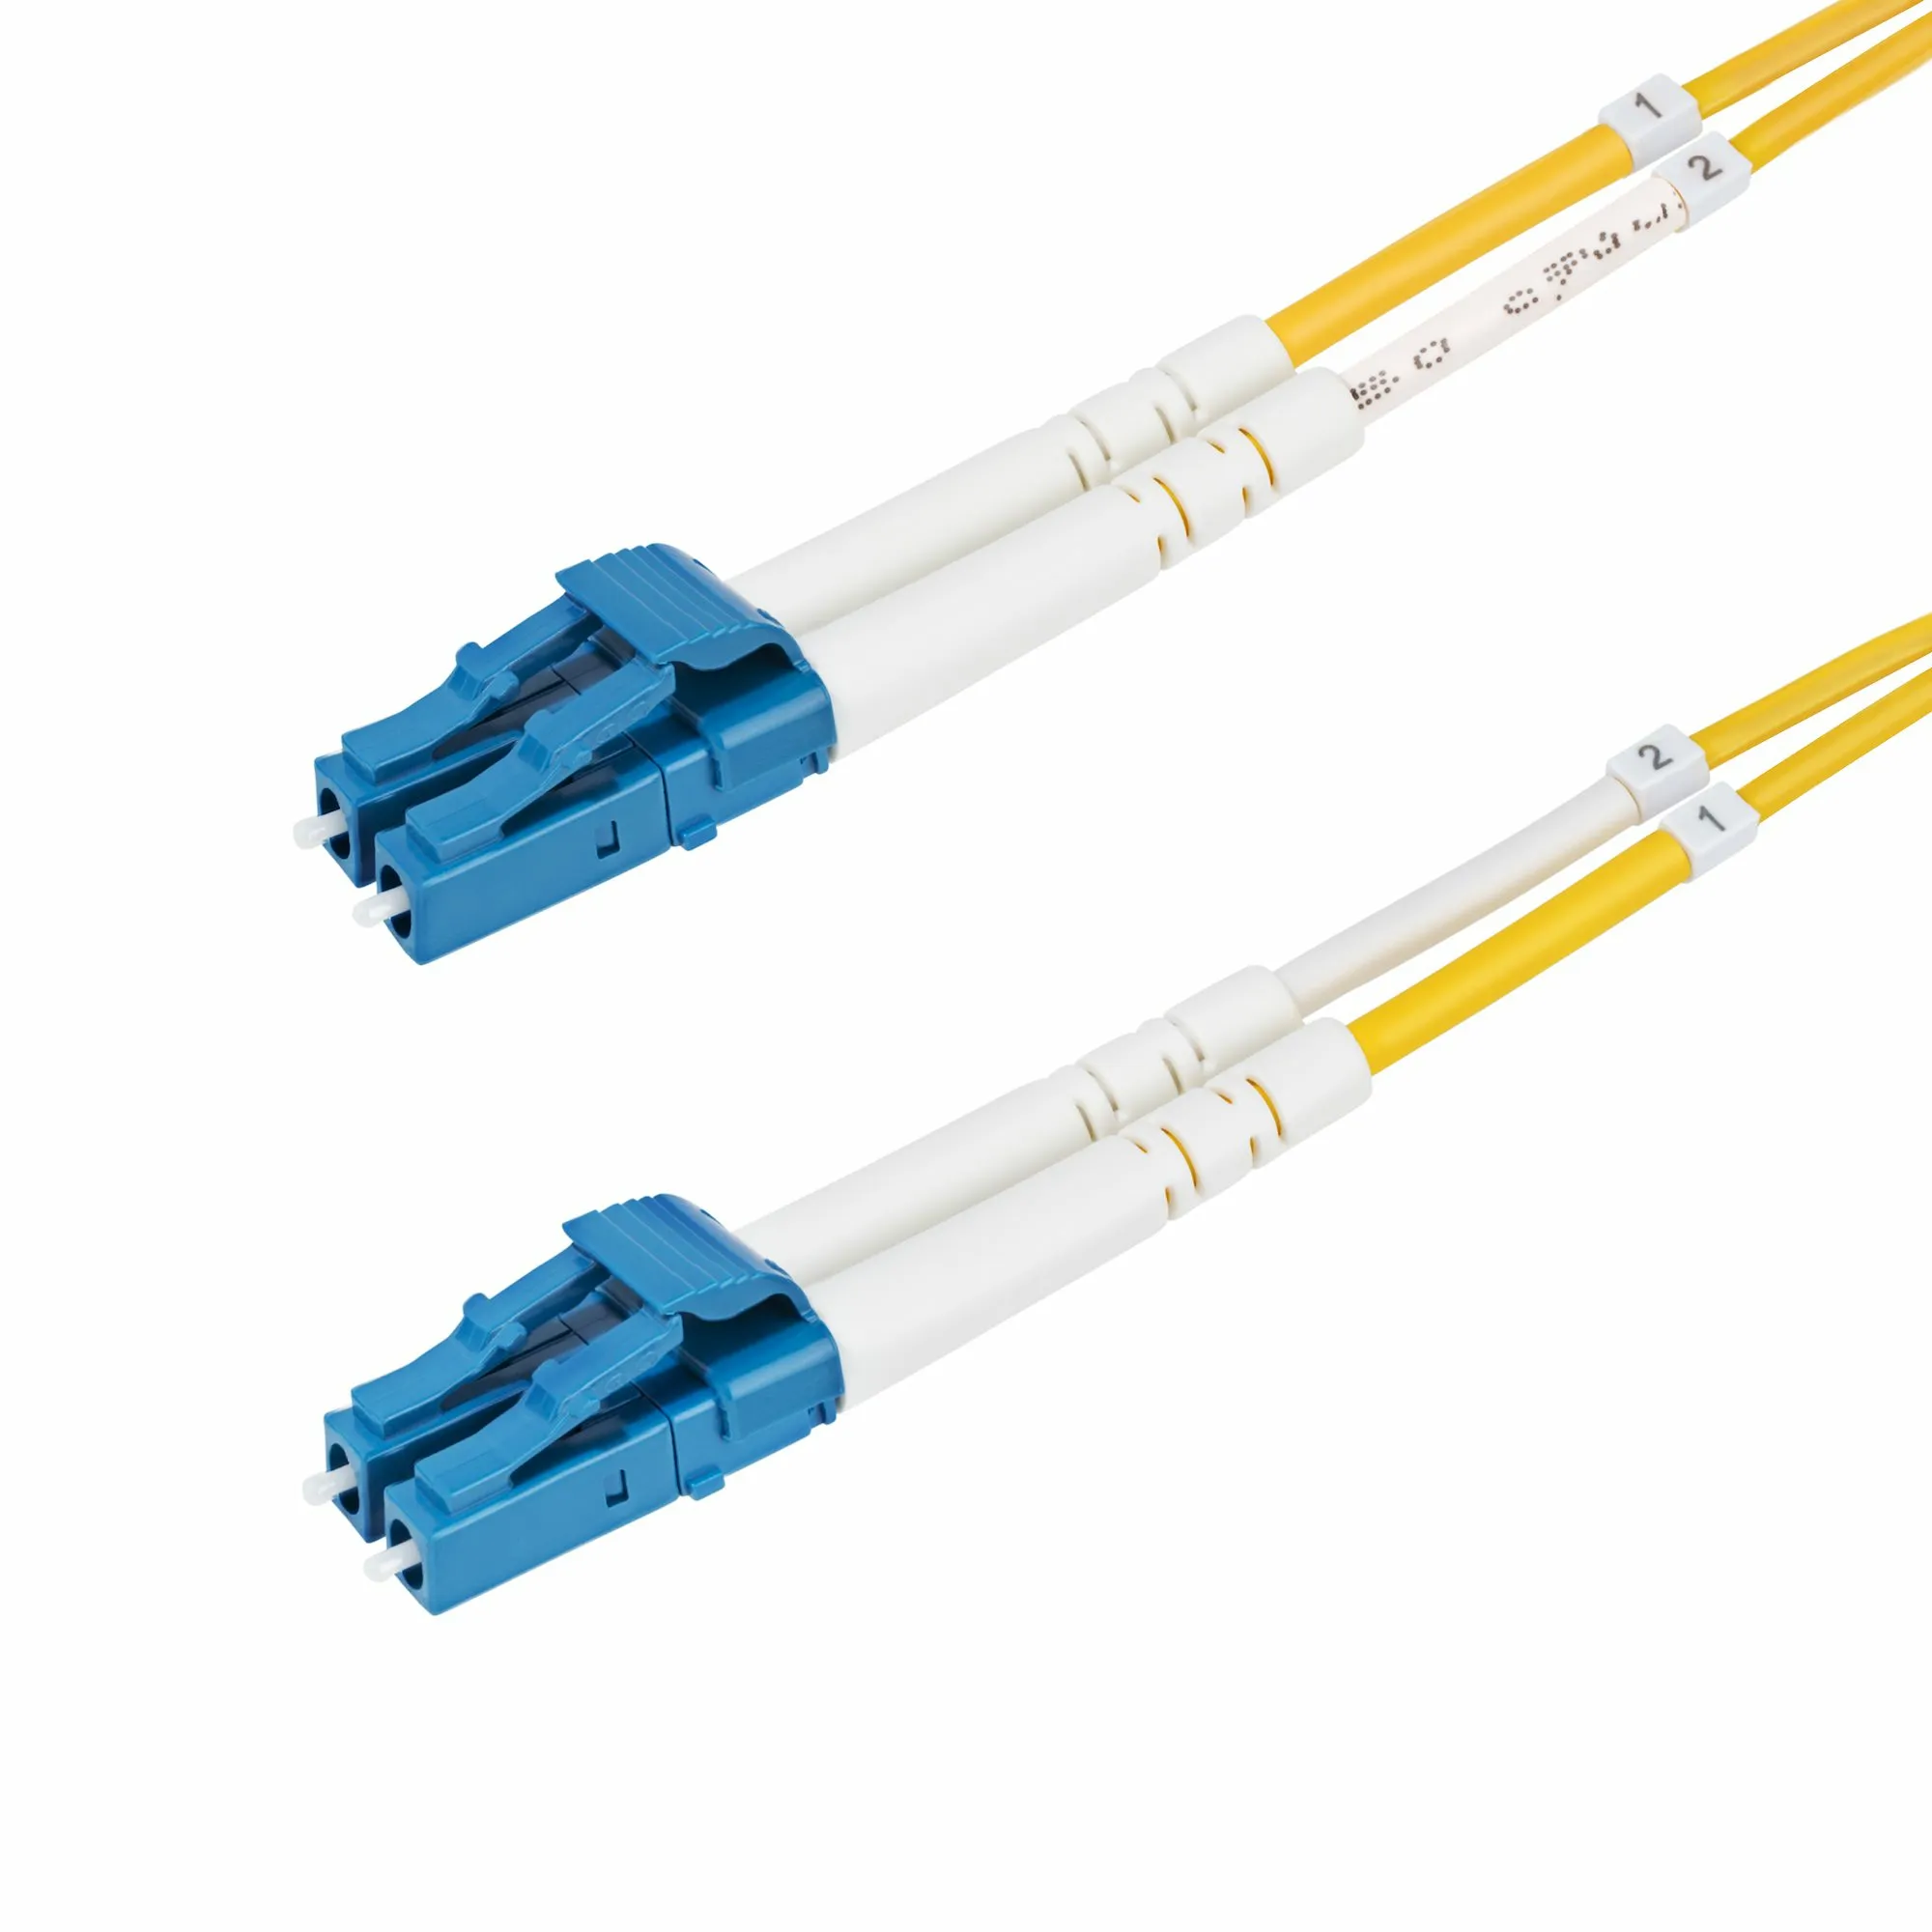 Vente StarTech.com Câble Fibre Optique de 7m Duplex Monomode au meilleur prix